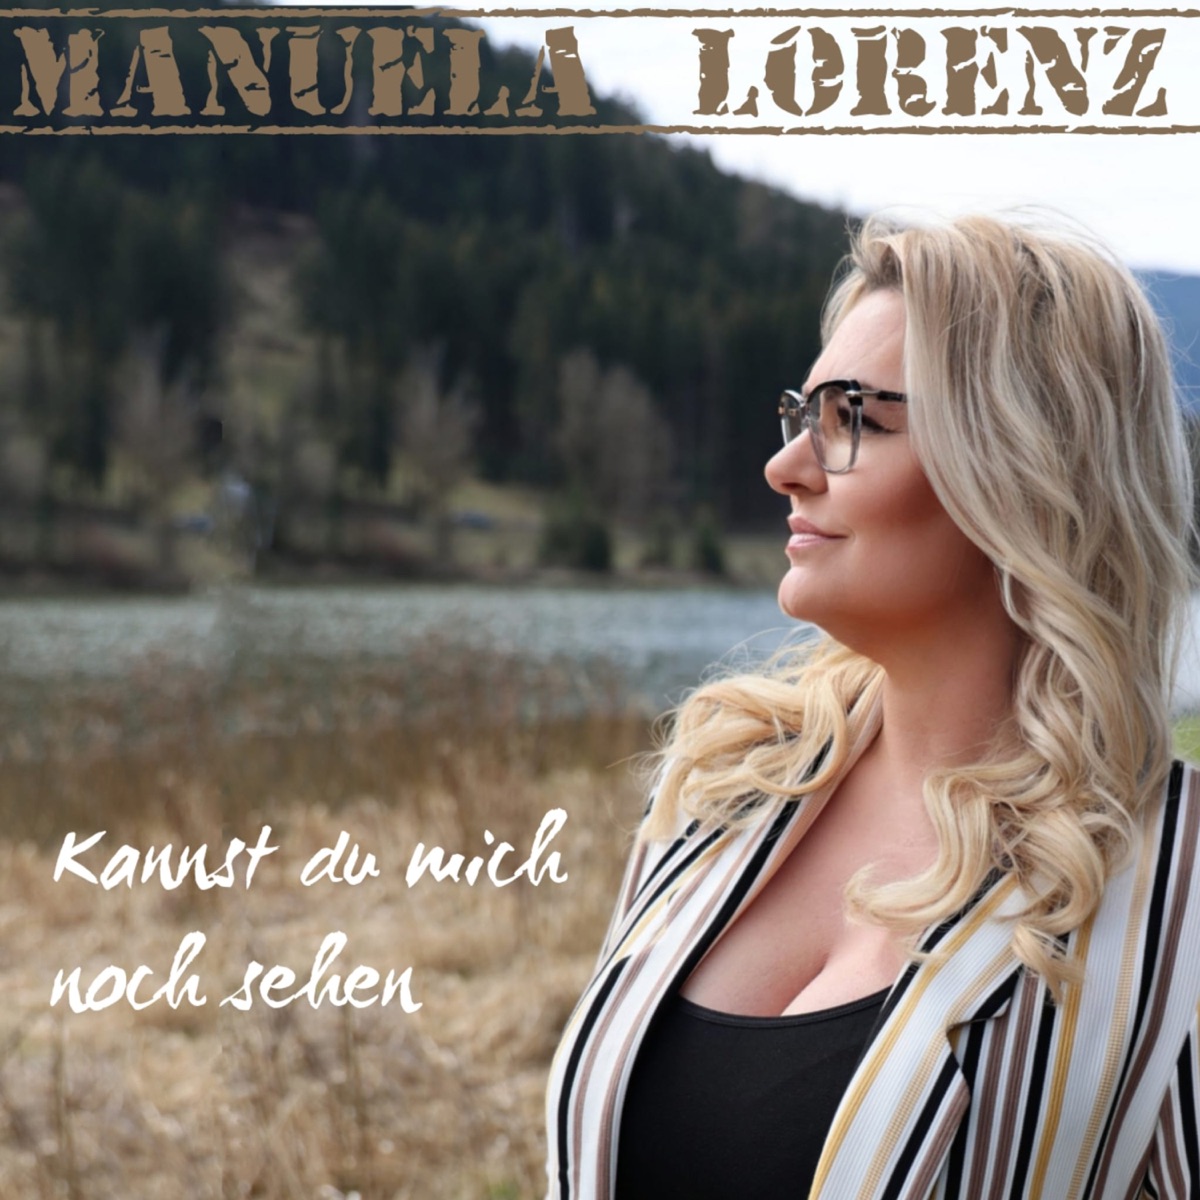 Manuela Lorenz - Kannst du mich noch sehen 